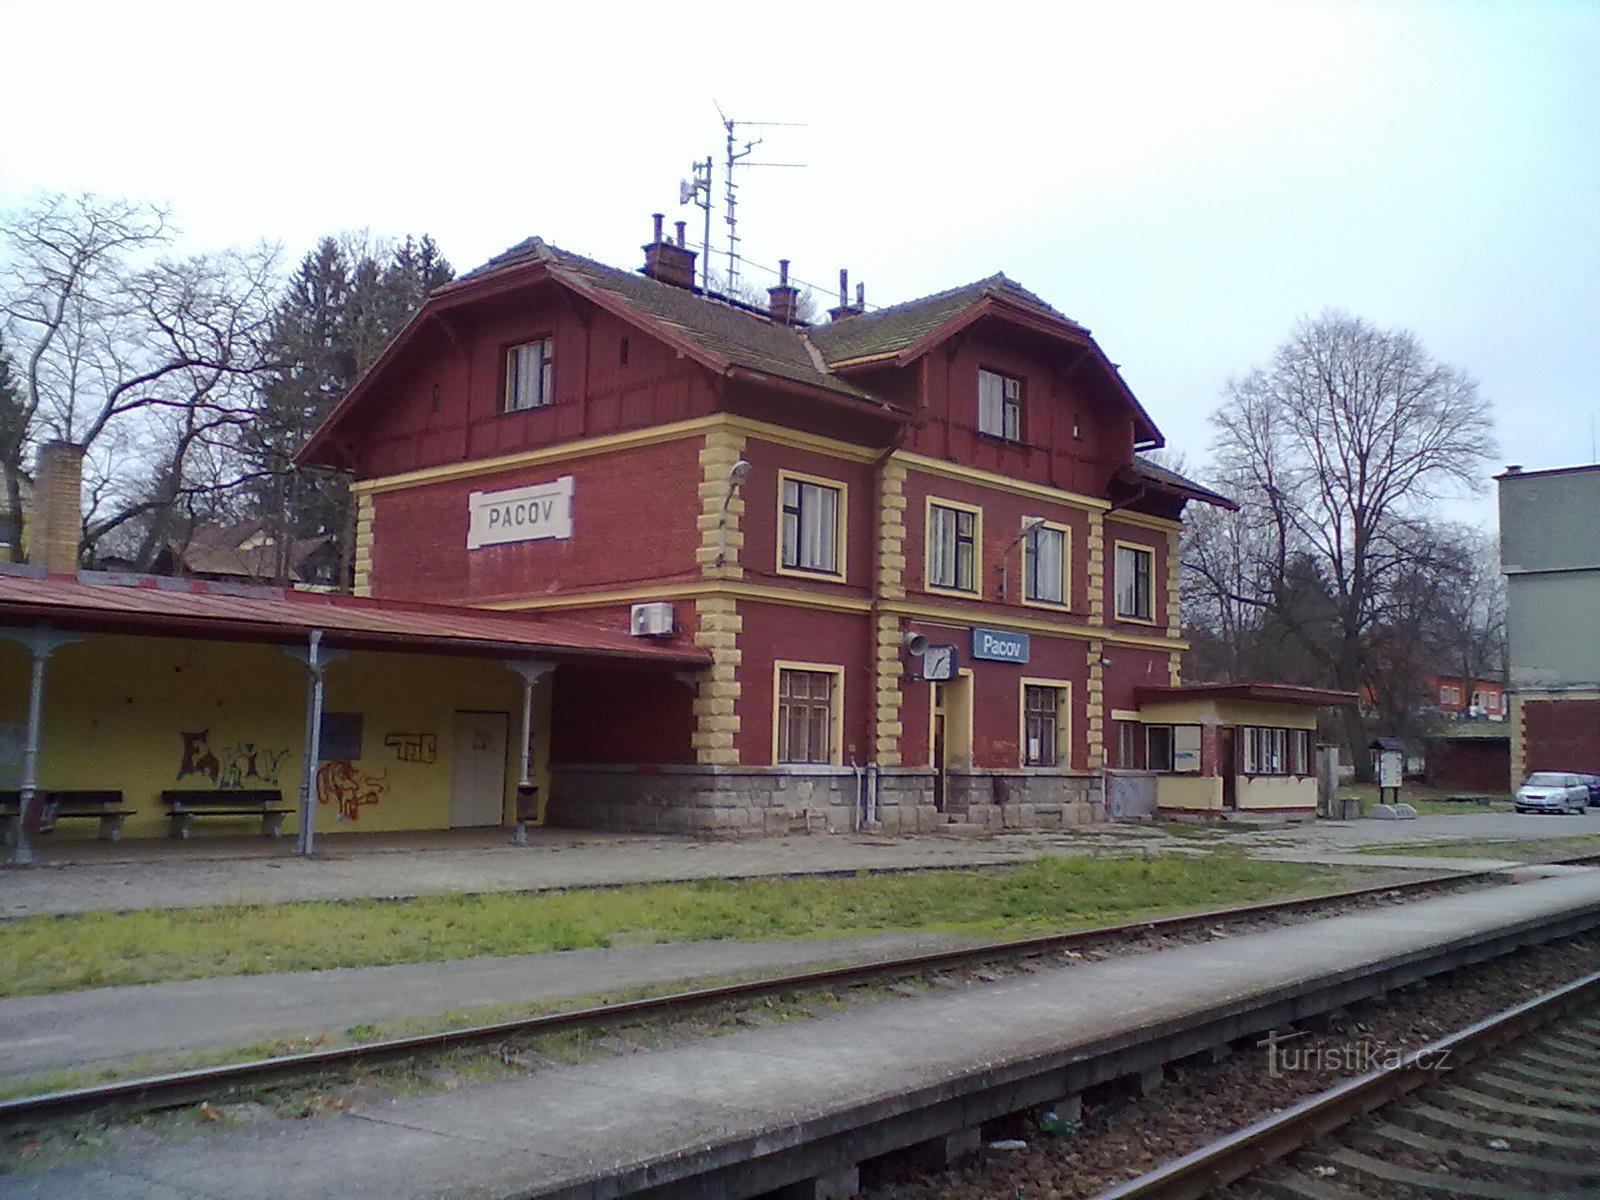 2. Железнодорожная станция в Пацове, начало и конец нашего похода.